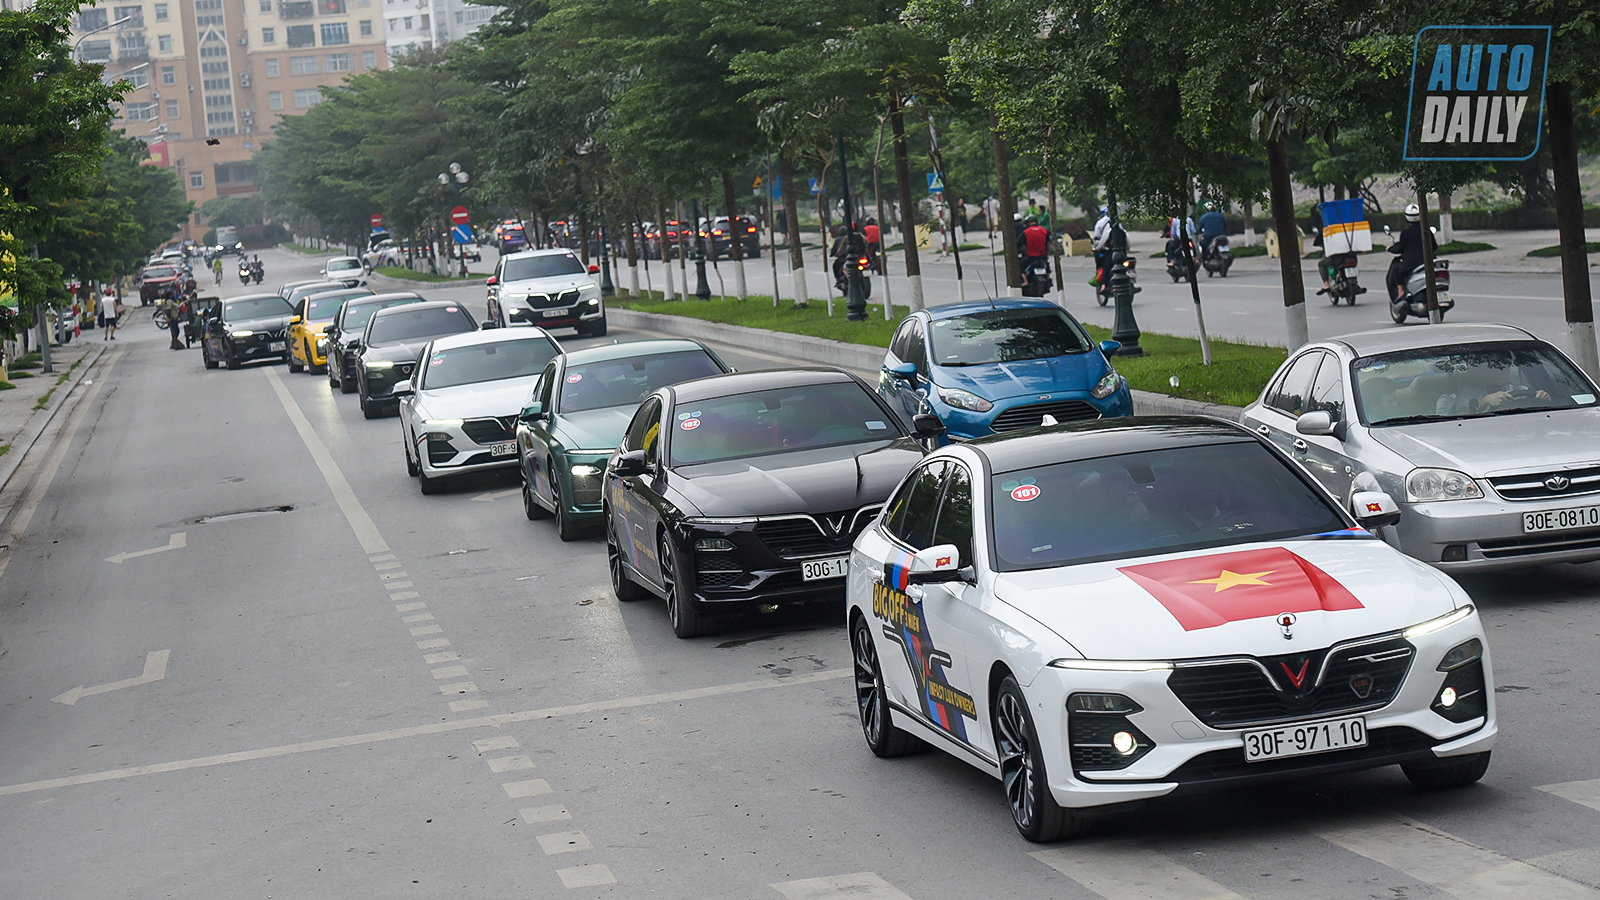 Chùm ảnh gần 60 xe VinFast Lux tại Hà Nội xuất phát Offline 3 miền tại Hội An dsc-6251-copy.jpg